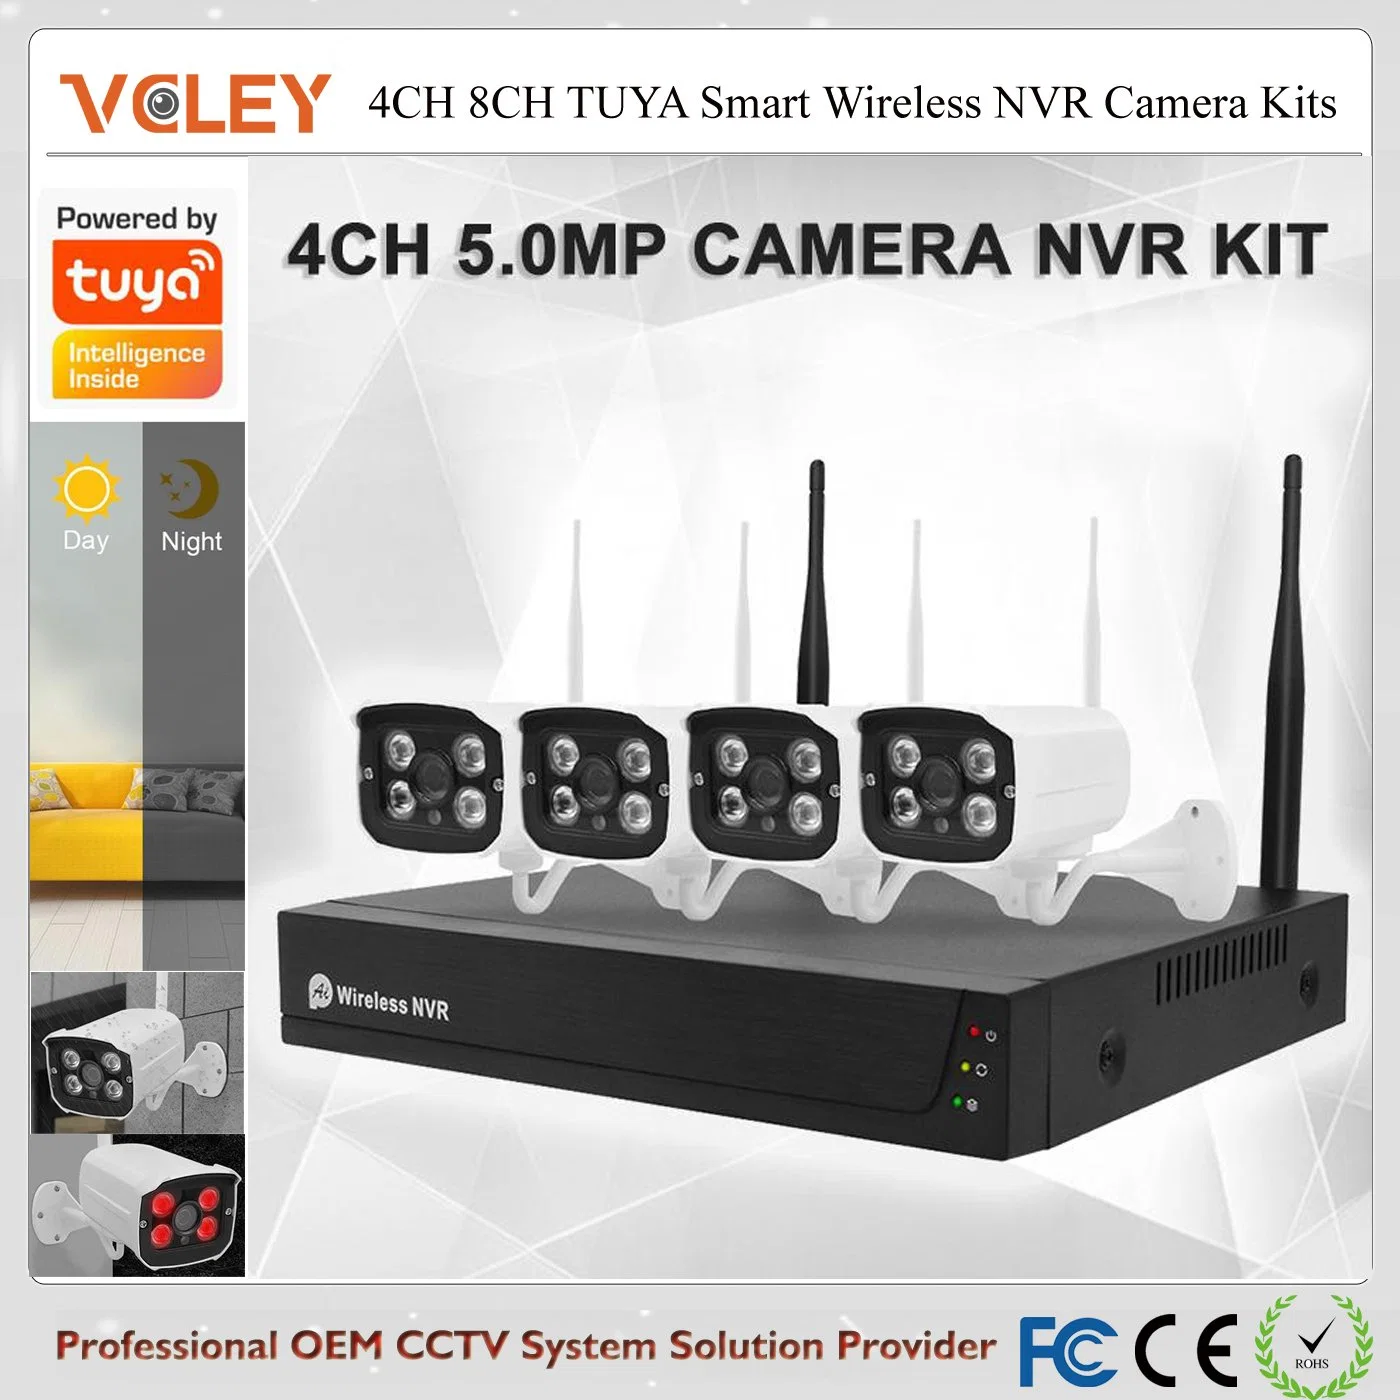 Tuya Smart Plug Play камеры CCTV комплект беспроводного сетевого видеорегистратора камеры видеонаблюдения DIY пакет WiFi IP-камера для домашних систем безопасности для систем видеонаблюдения и безопасности беспроводных сетей камеры